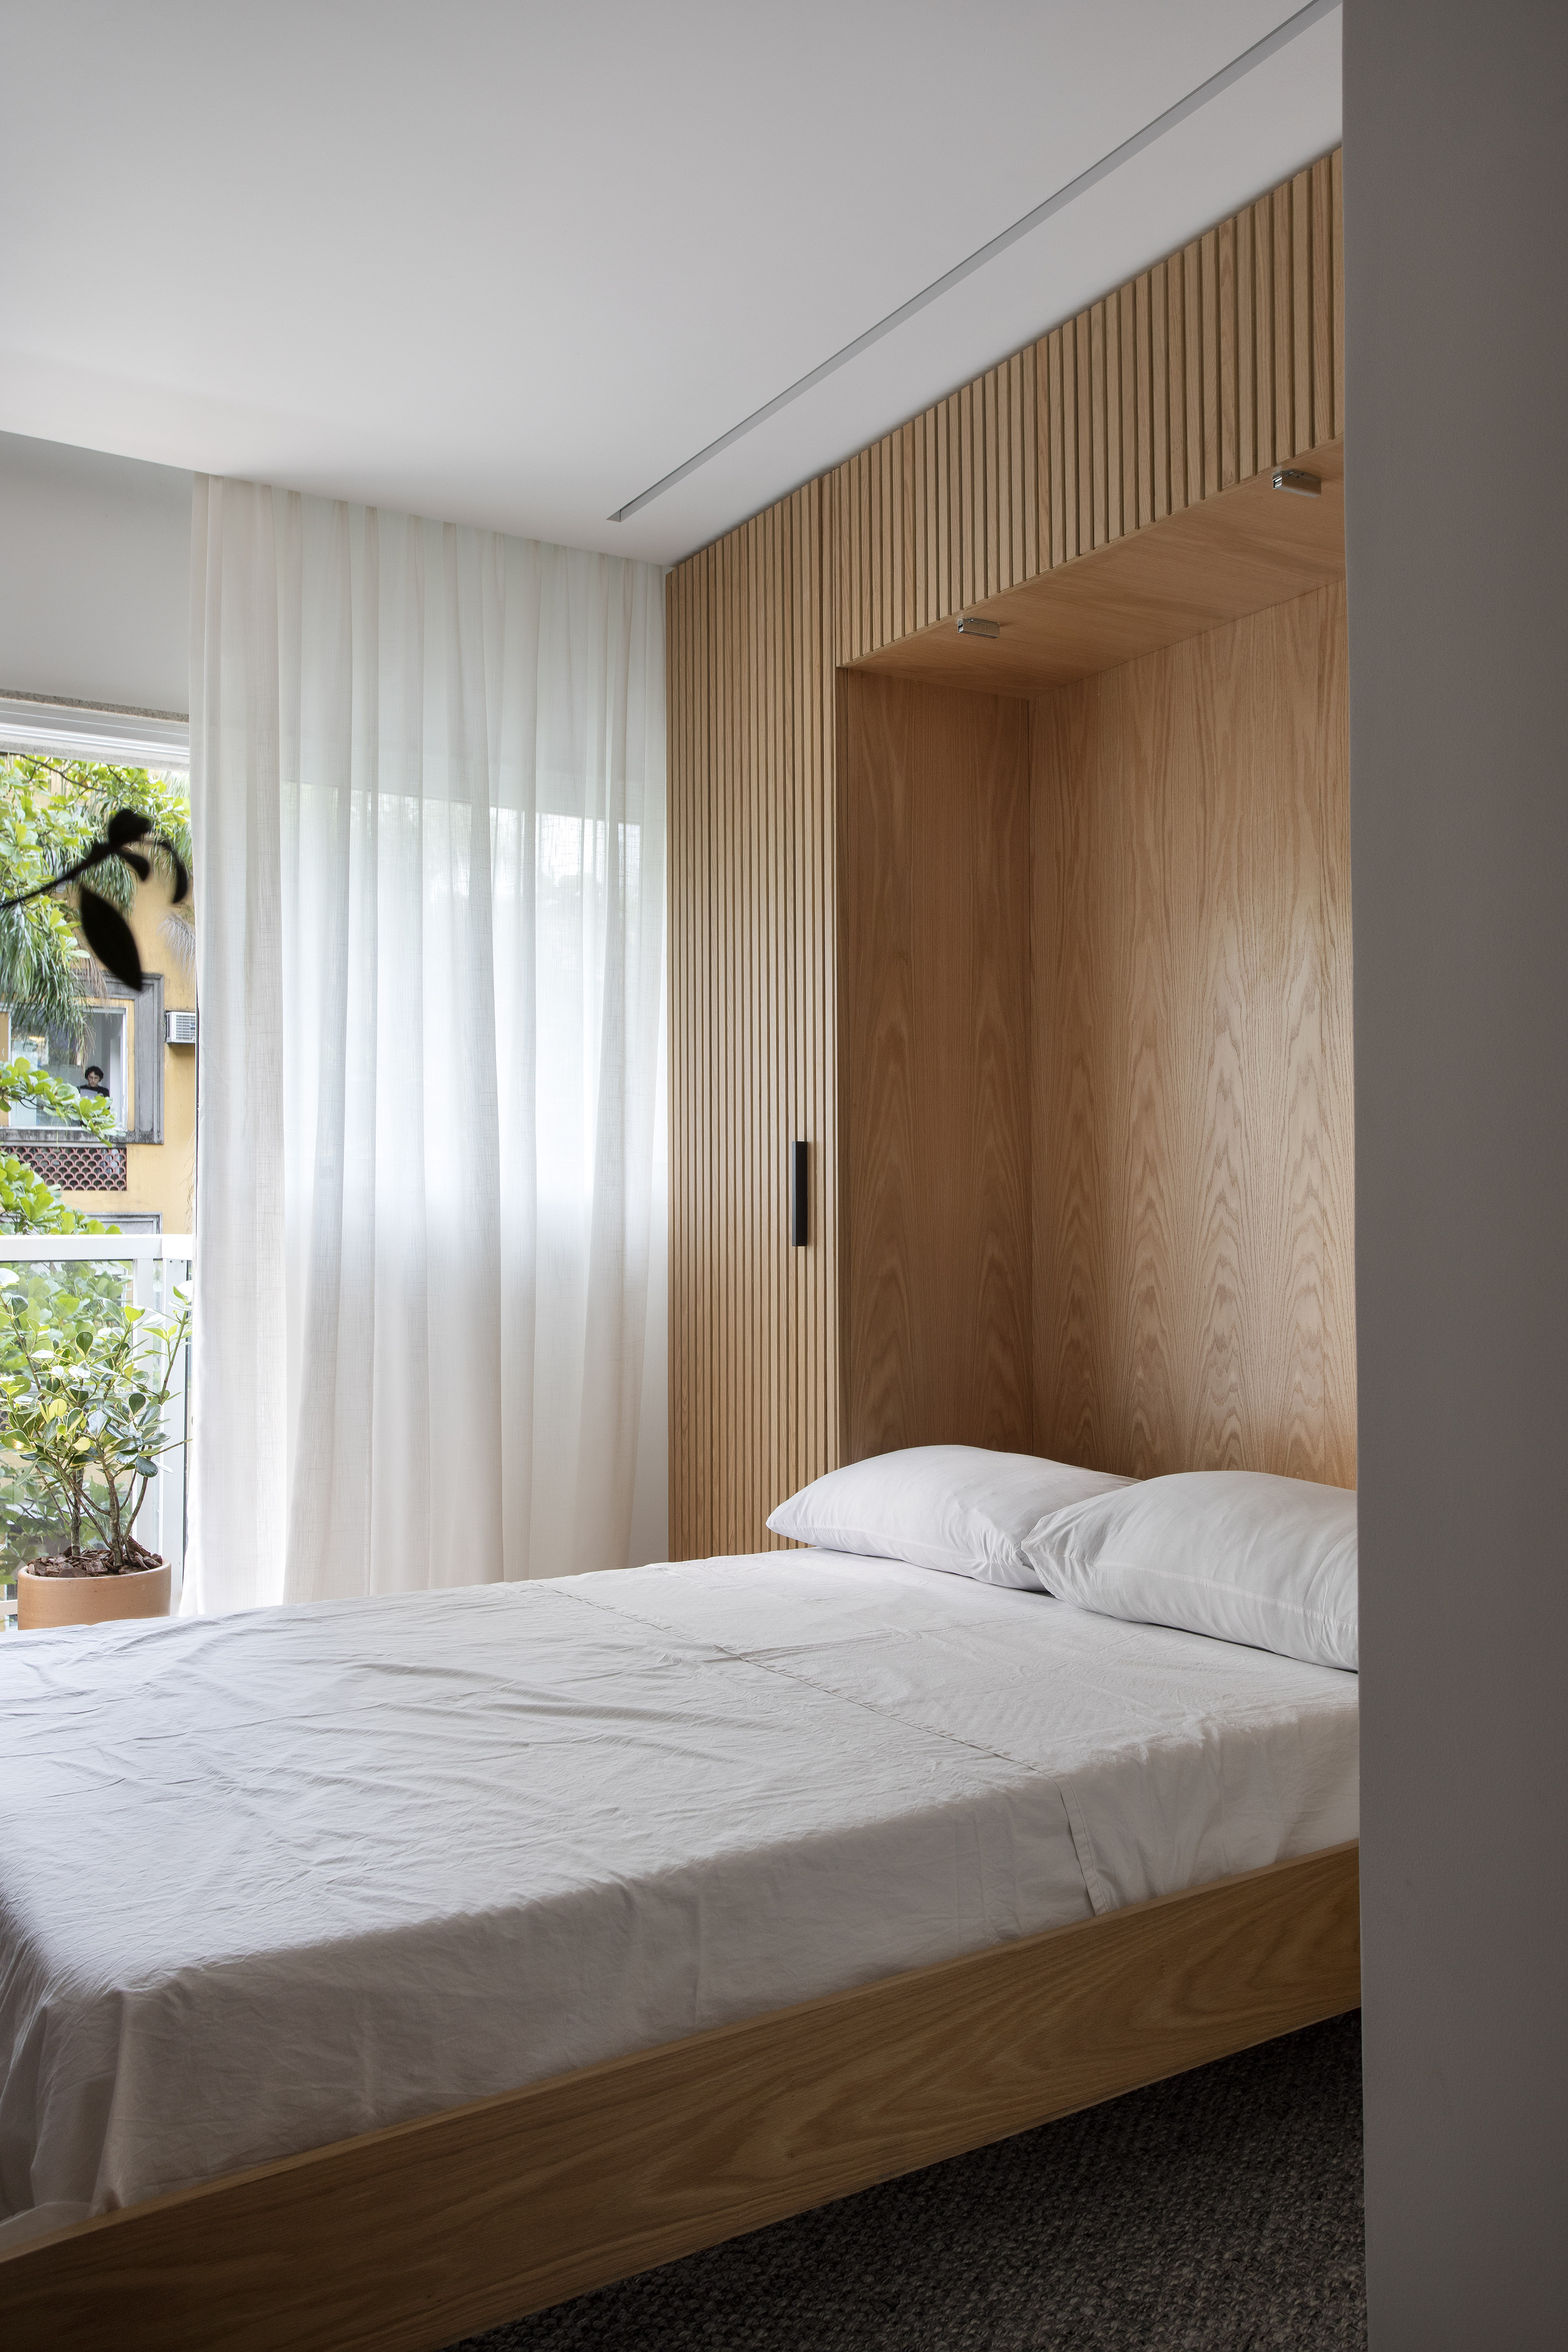 Apê de 160m² tem cama retrátil “escondida” em painel de madeira ripada